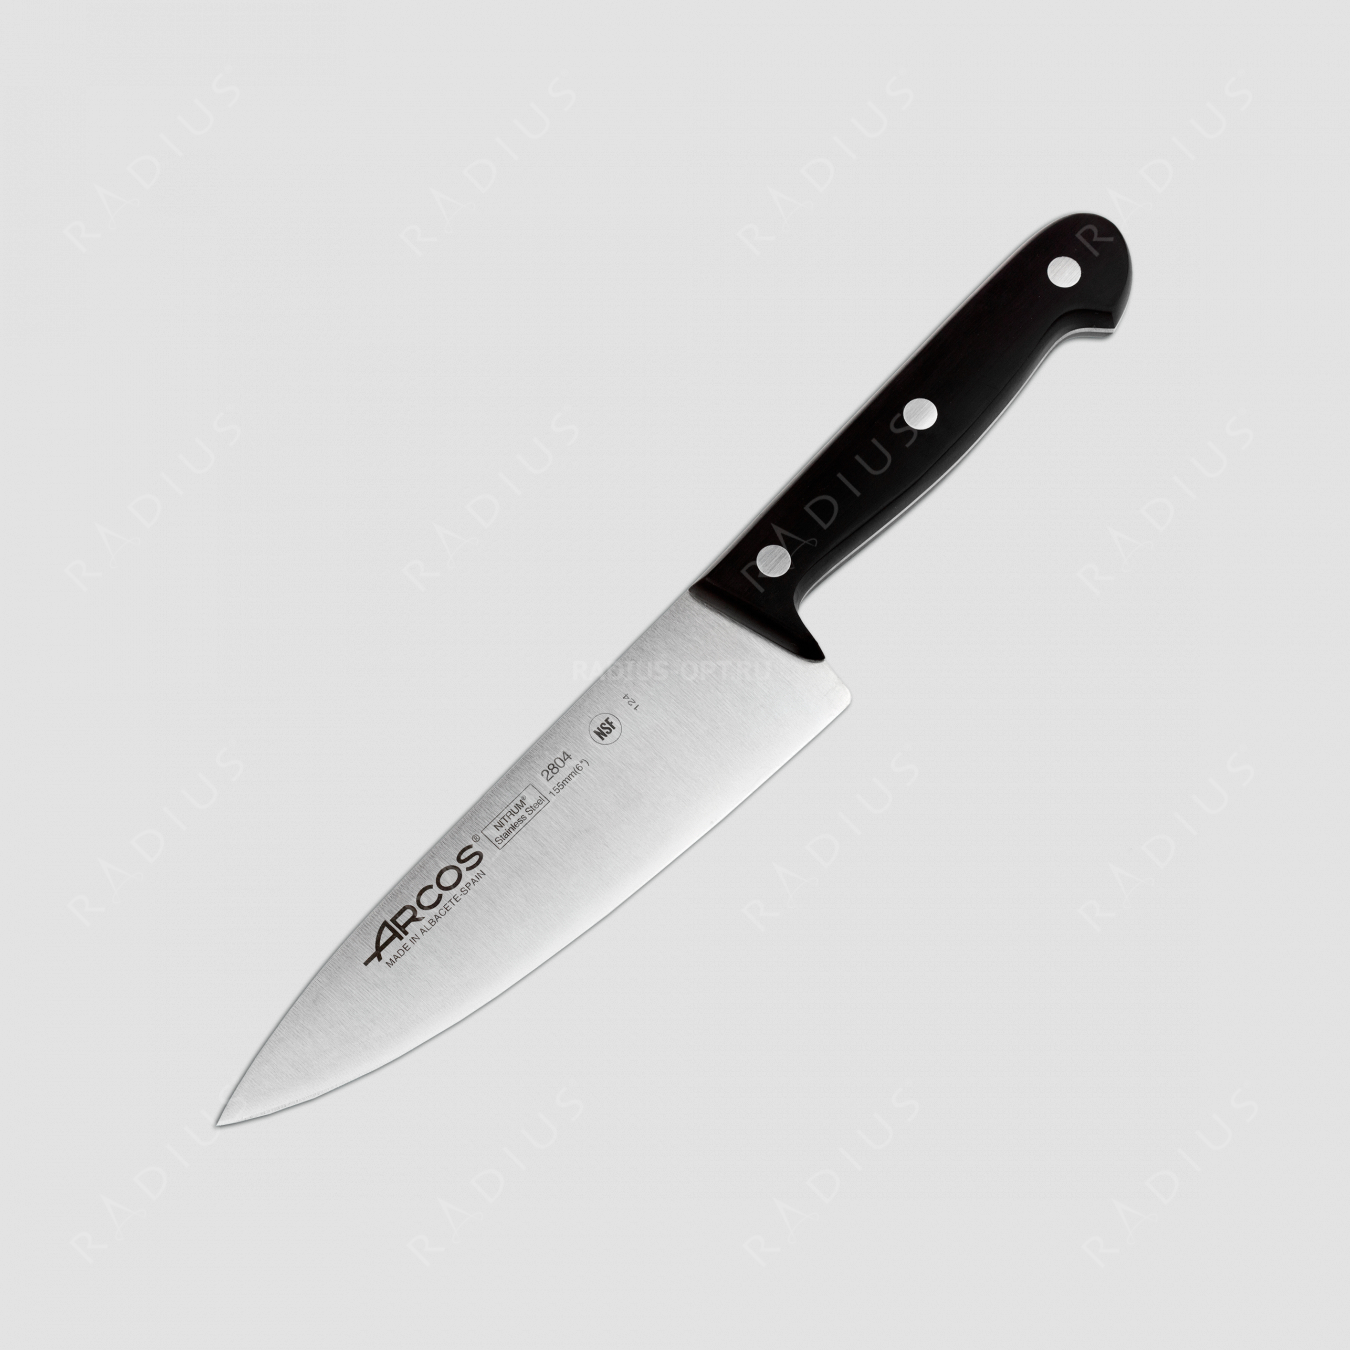 Профессиональный поварской кухонный нож 15,5 см, серия Universal, ARCOS, Испания